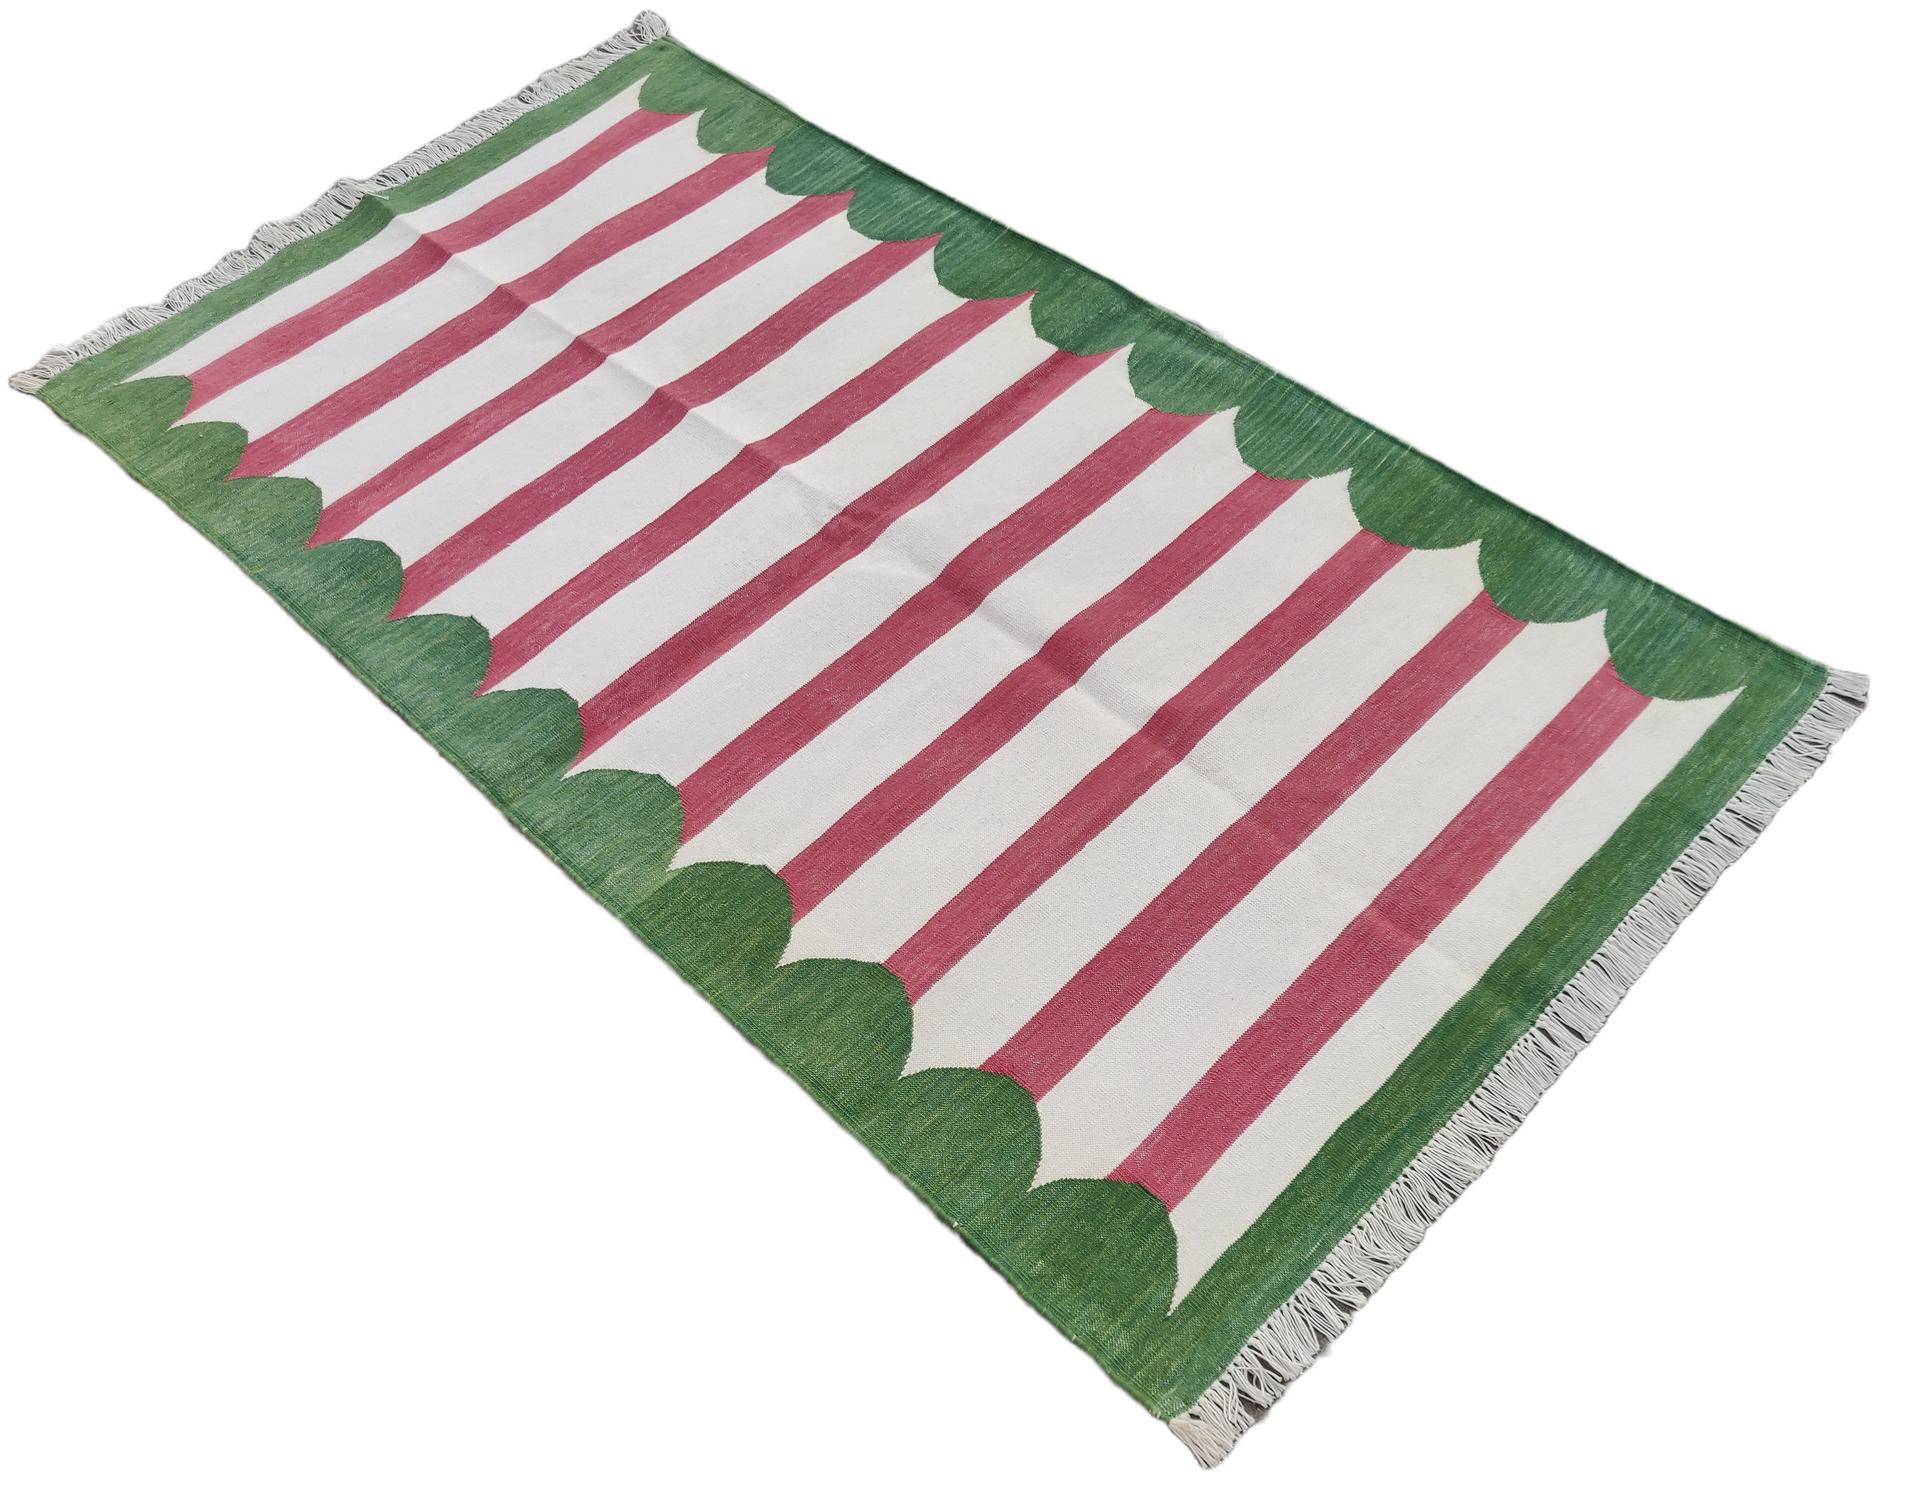 Baumwolle pflanzlich gefärbt rosa und grün mit Wellenschliff gestreiften indischen Dhurrie Teppich-3'x5' 
Diese speziellen flachgewebten Dhurries werden aus 15-fachem Garn aus 100% Baumwolle handgewebt. Aufgrund der speziellen Fertigungstechniken,